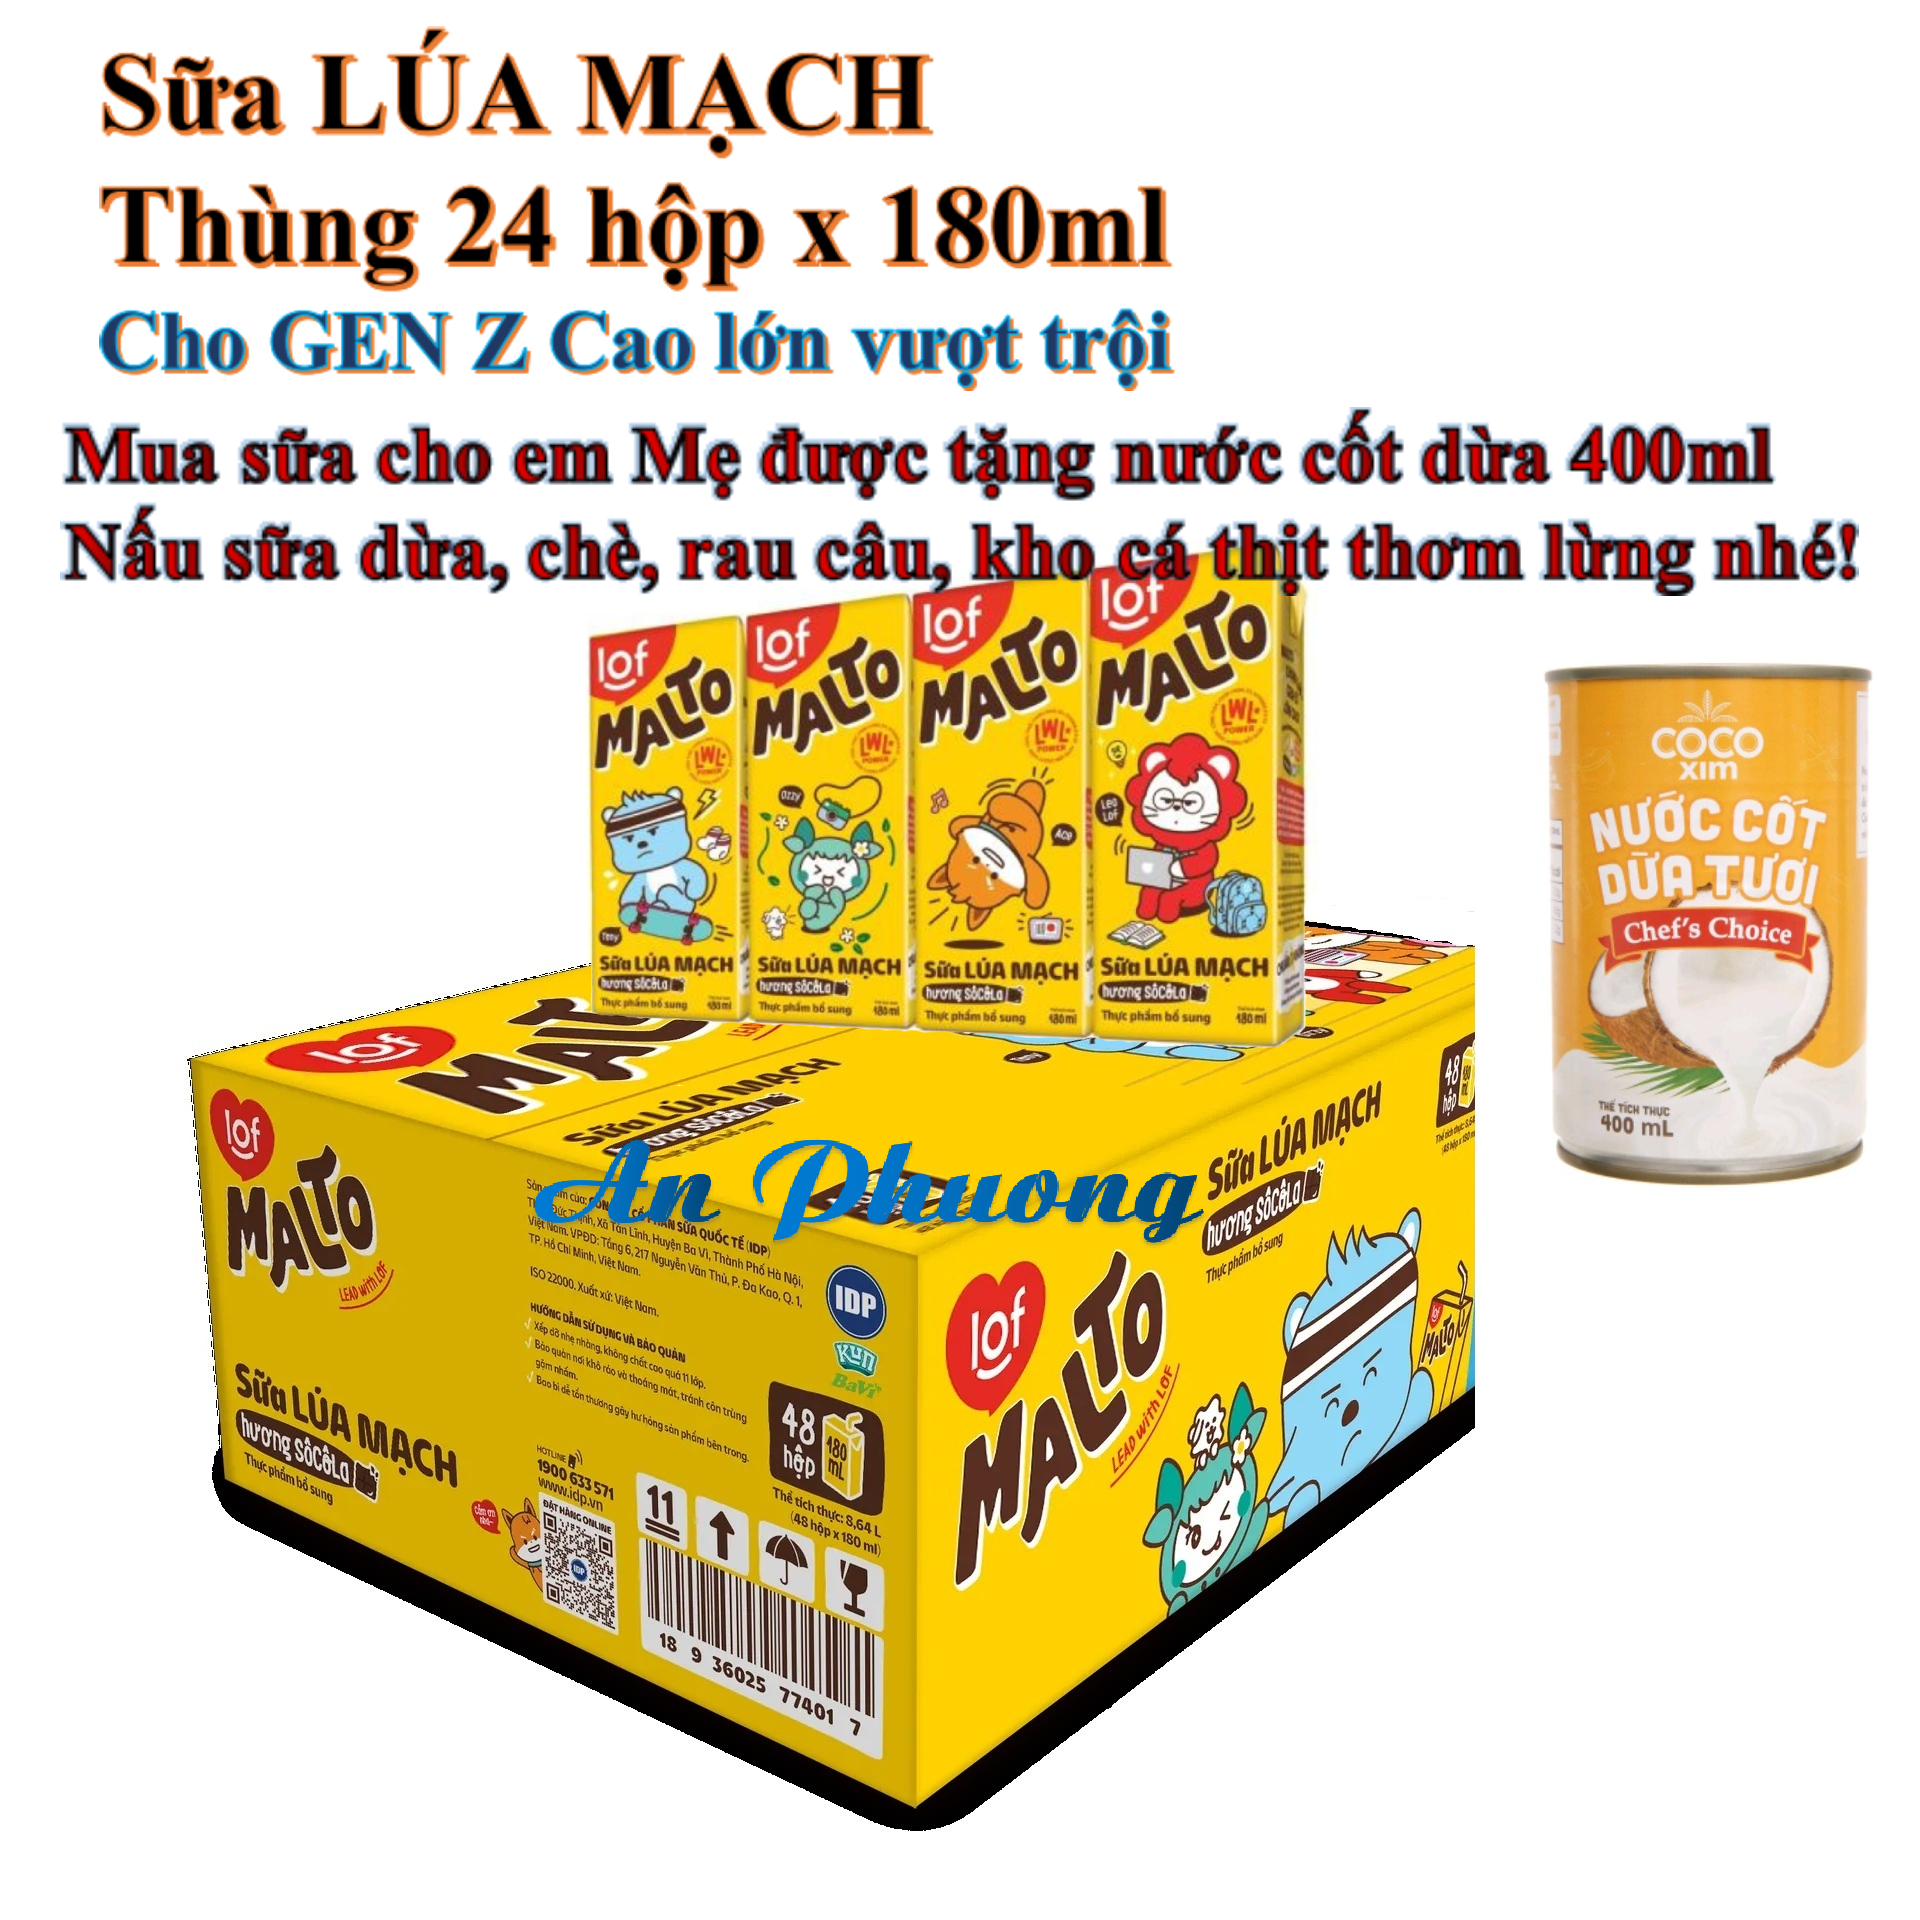 Sữa lúa mạch MALTO thùng 24 hộp 180ml cho GEN Z Cao lớn mỗi ngày